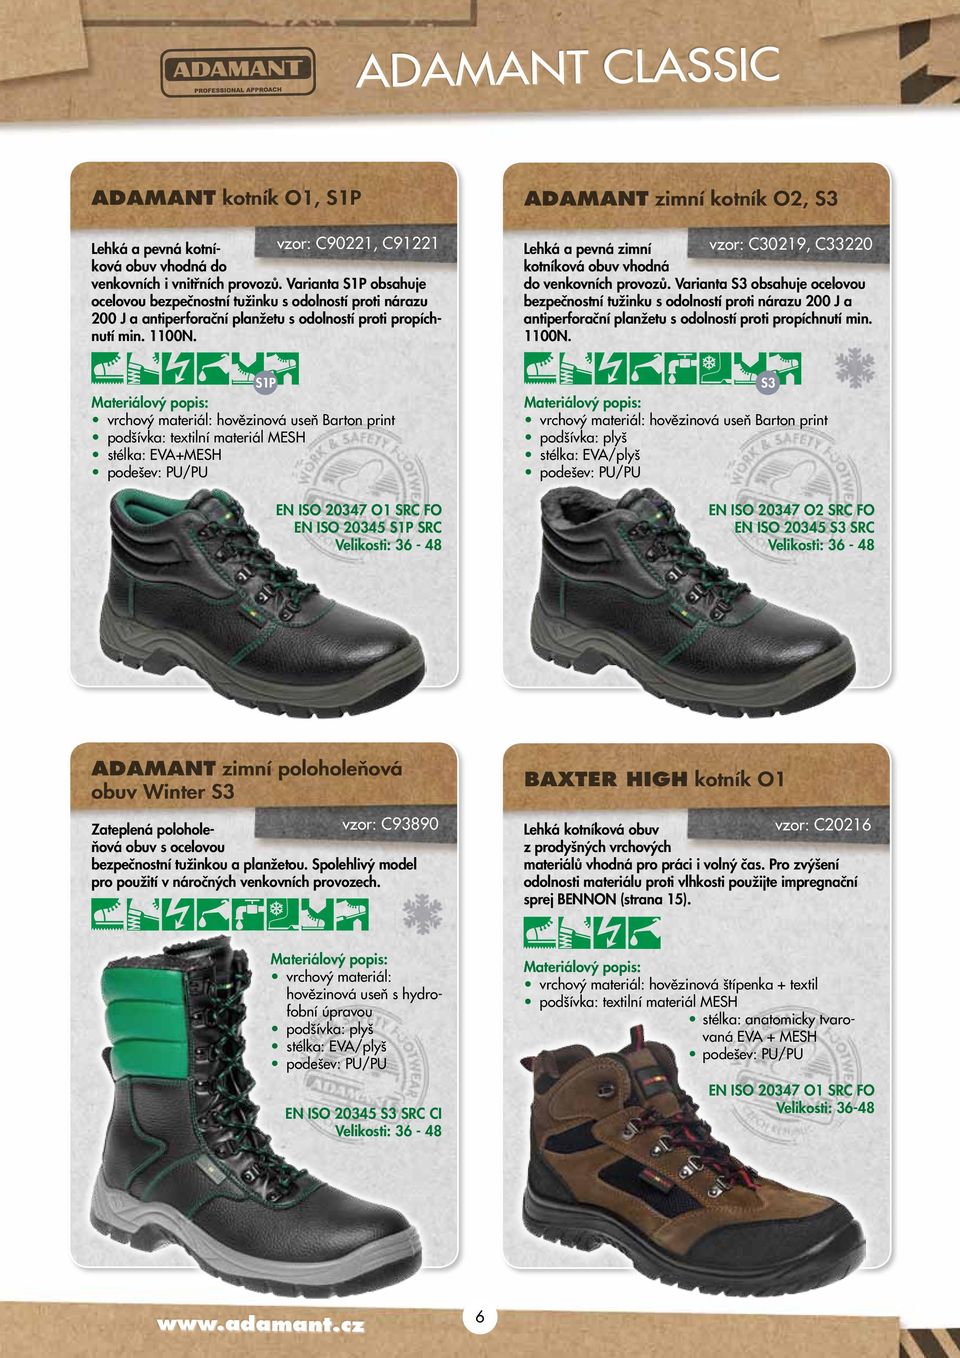 Lehká a pevná zimní vzor: C30219, C33220 kotníková obuv vhodná do venkovních provozů.